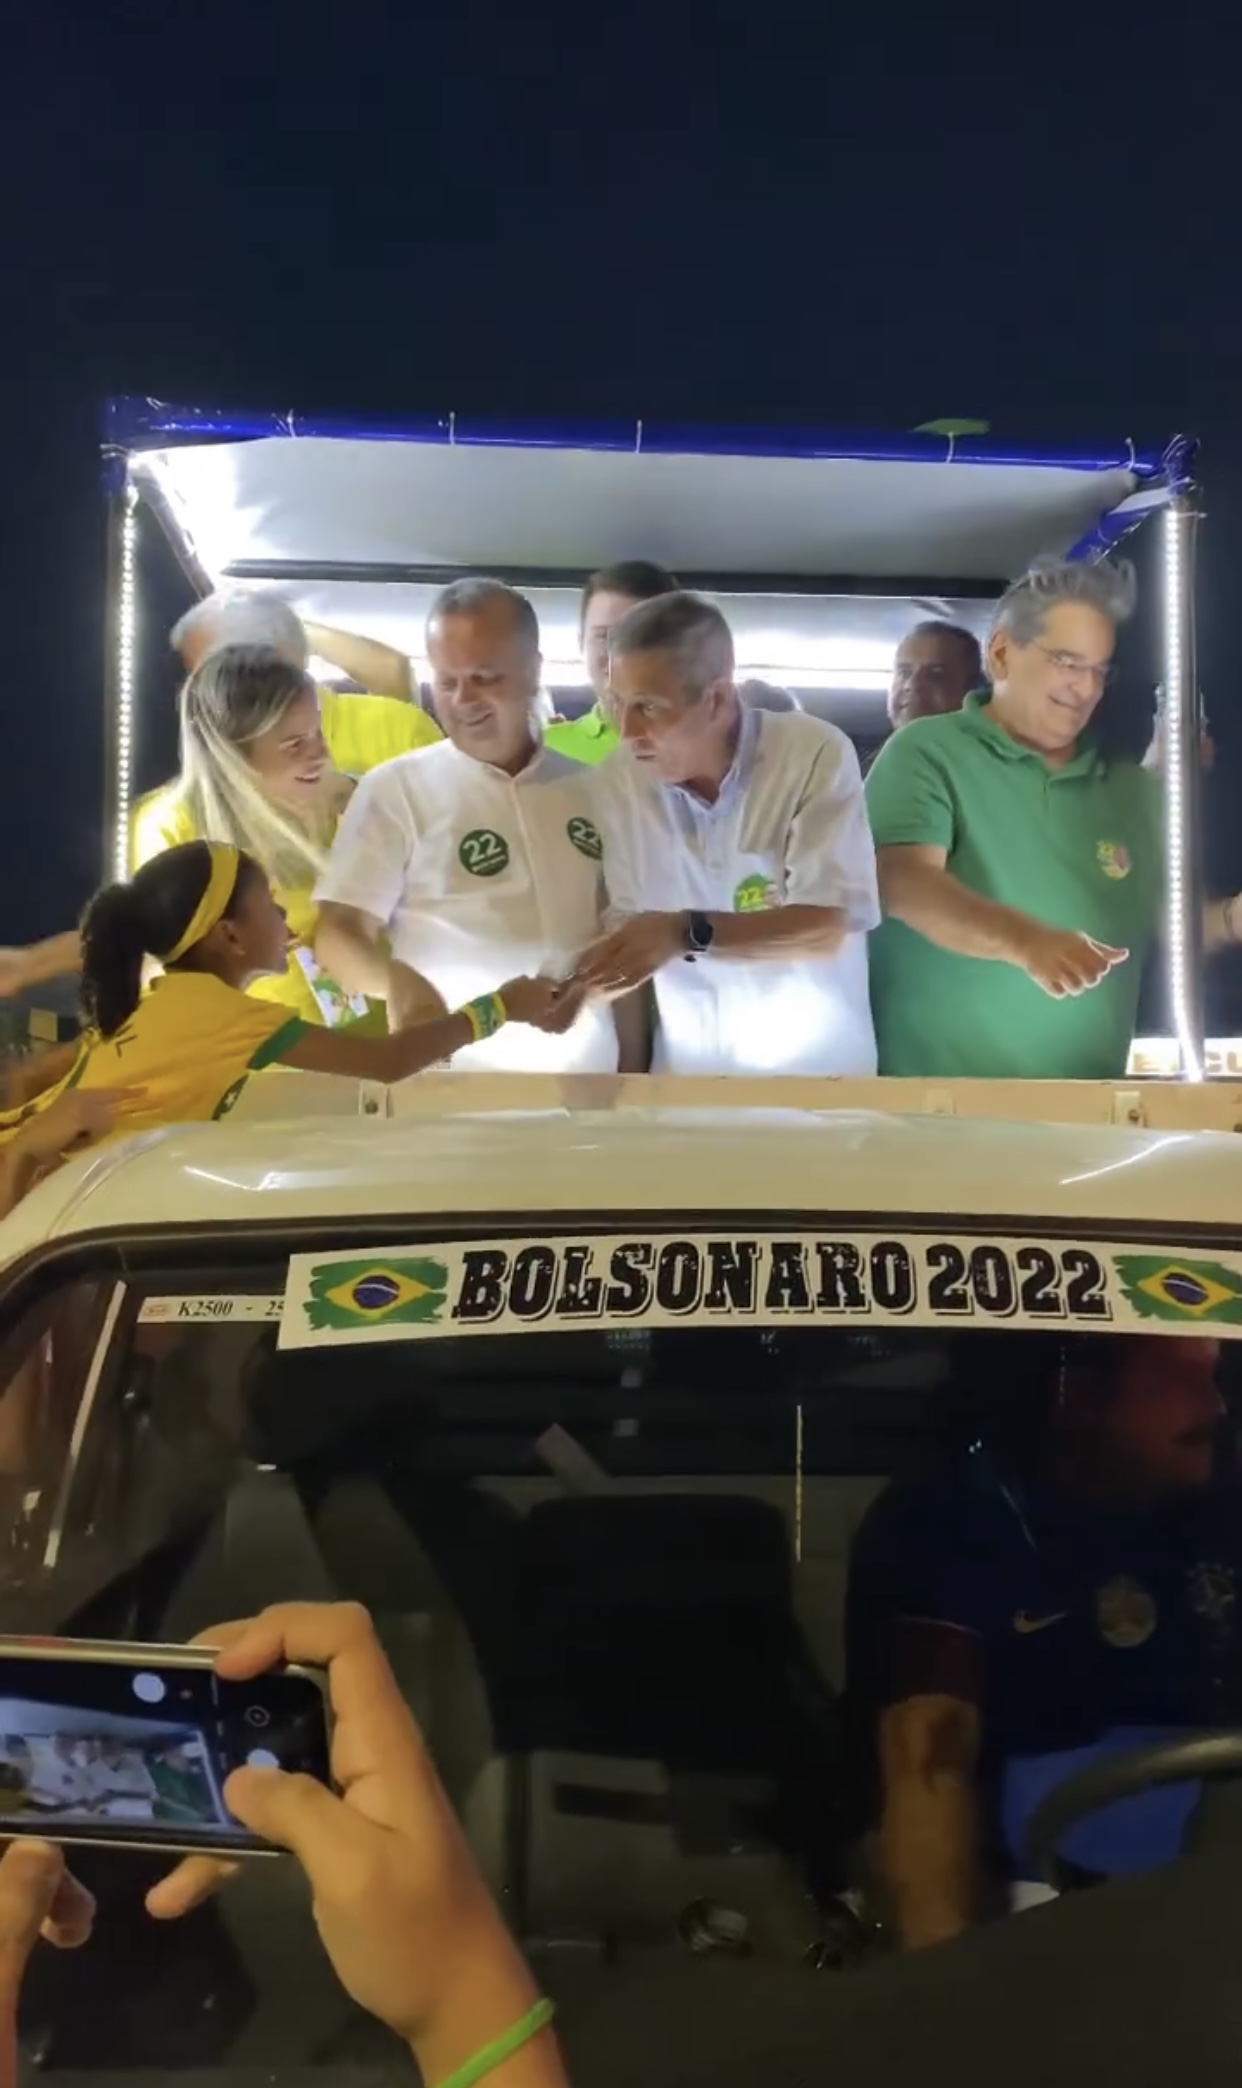 VÍDEO: Passeata pró-Bolsonaro reúne grande número de apoiadores em Mossoró